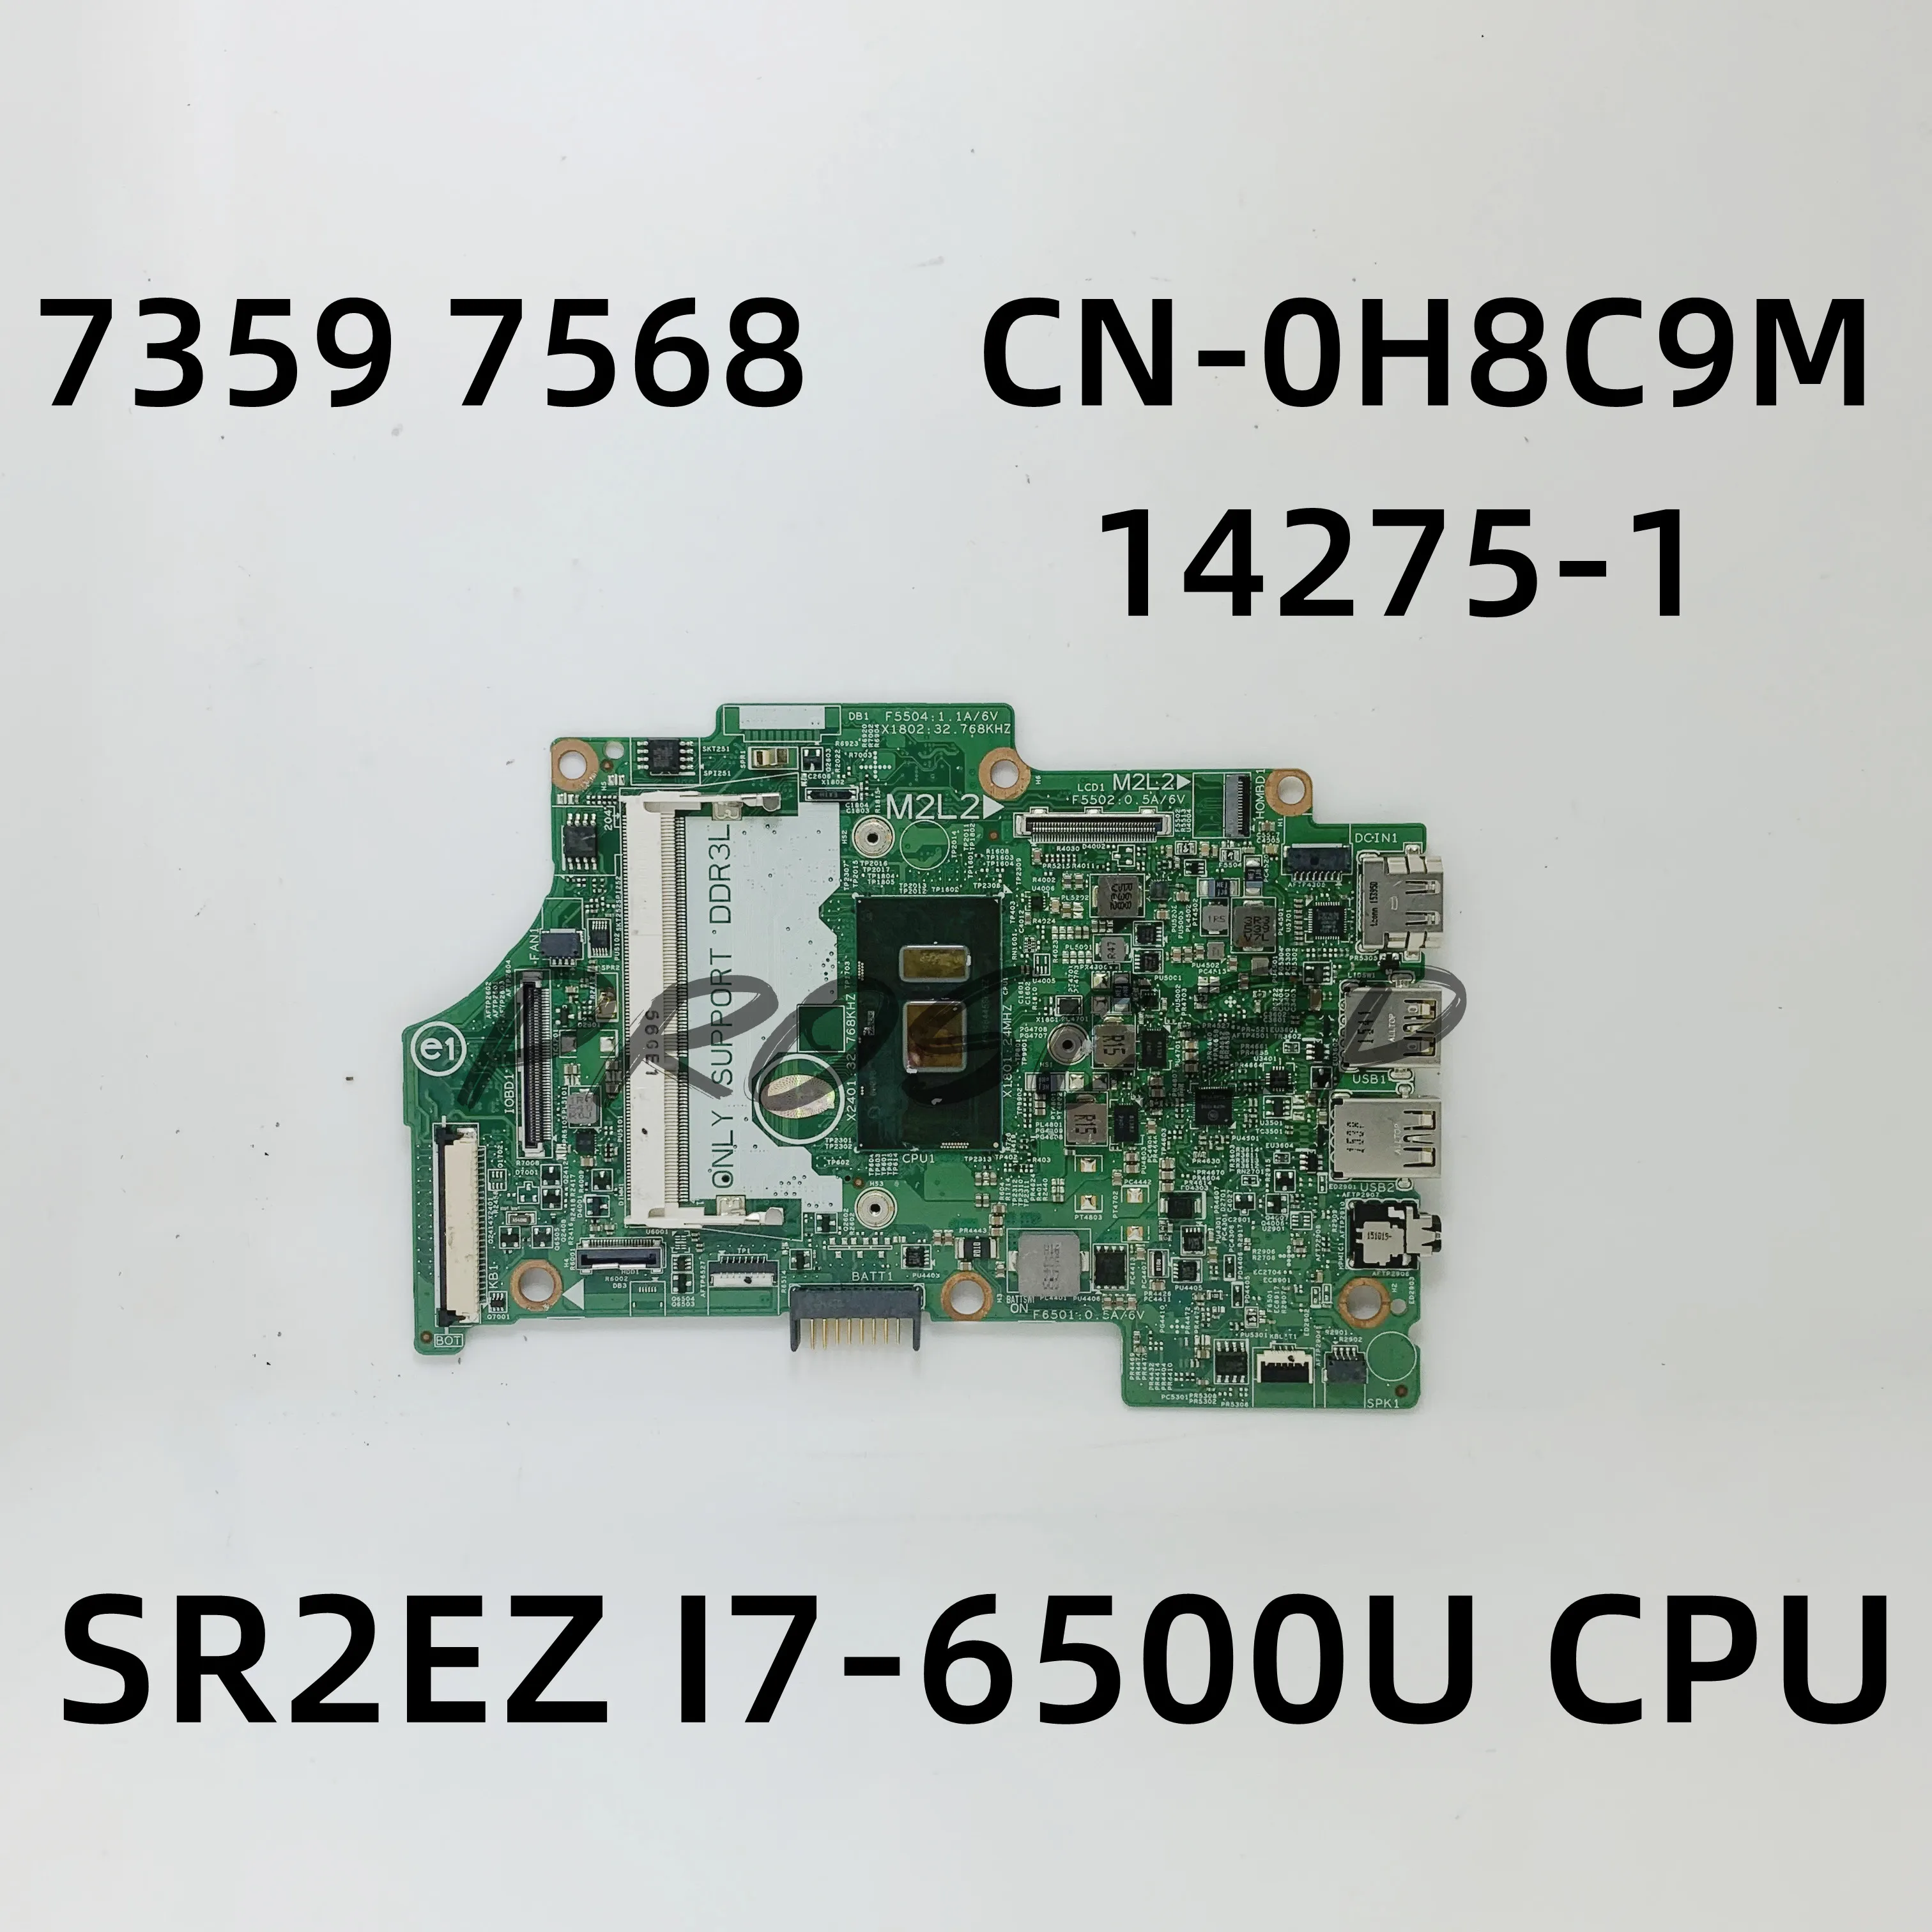 

CN-0H8C9M 0H8C9M H8C9M материнская плата для ноутбука DELL 7359 7568 материнская плата 14275-1 с процессором SR2EZ I7-6500U 100% полностью протестированная работа